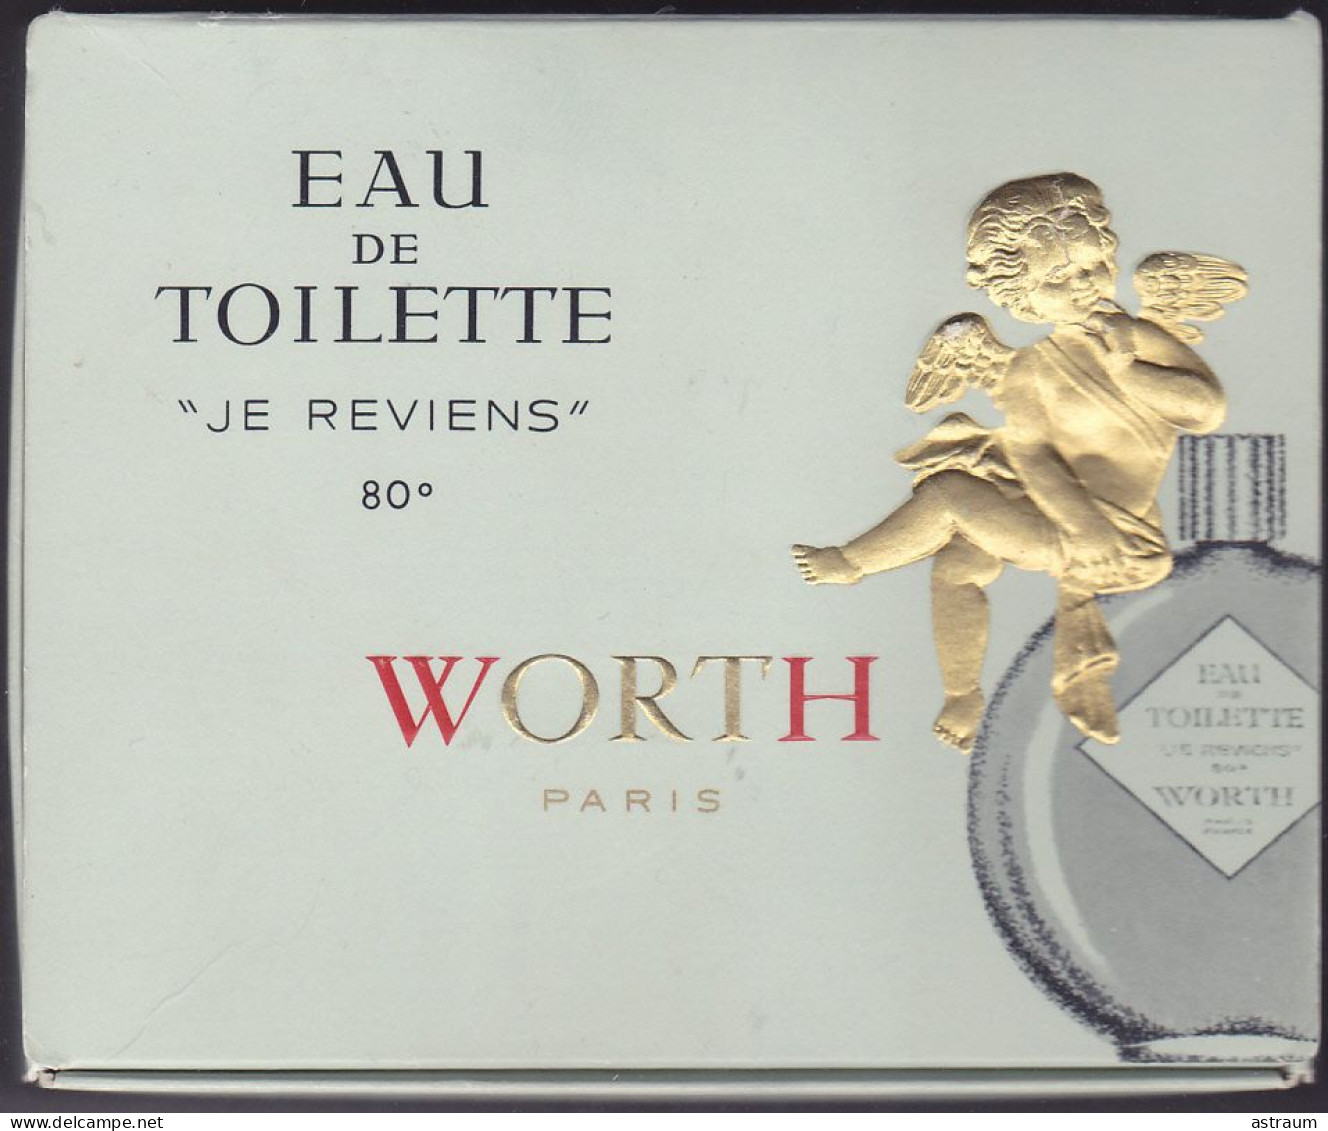 Coffret Miniature Parfum Ancienne - Worth - Je Reviens - Pleine Avec Boite 31,5 Ml - Miniatures Womens' Fragrances (in Box)